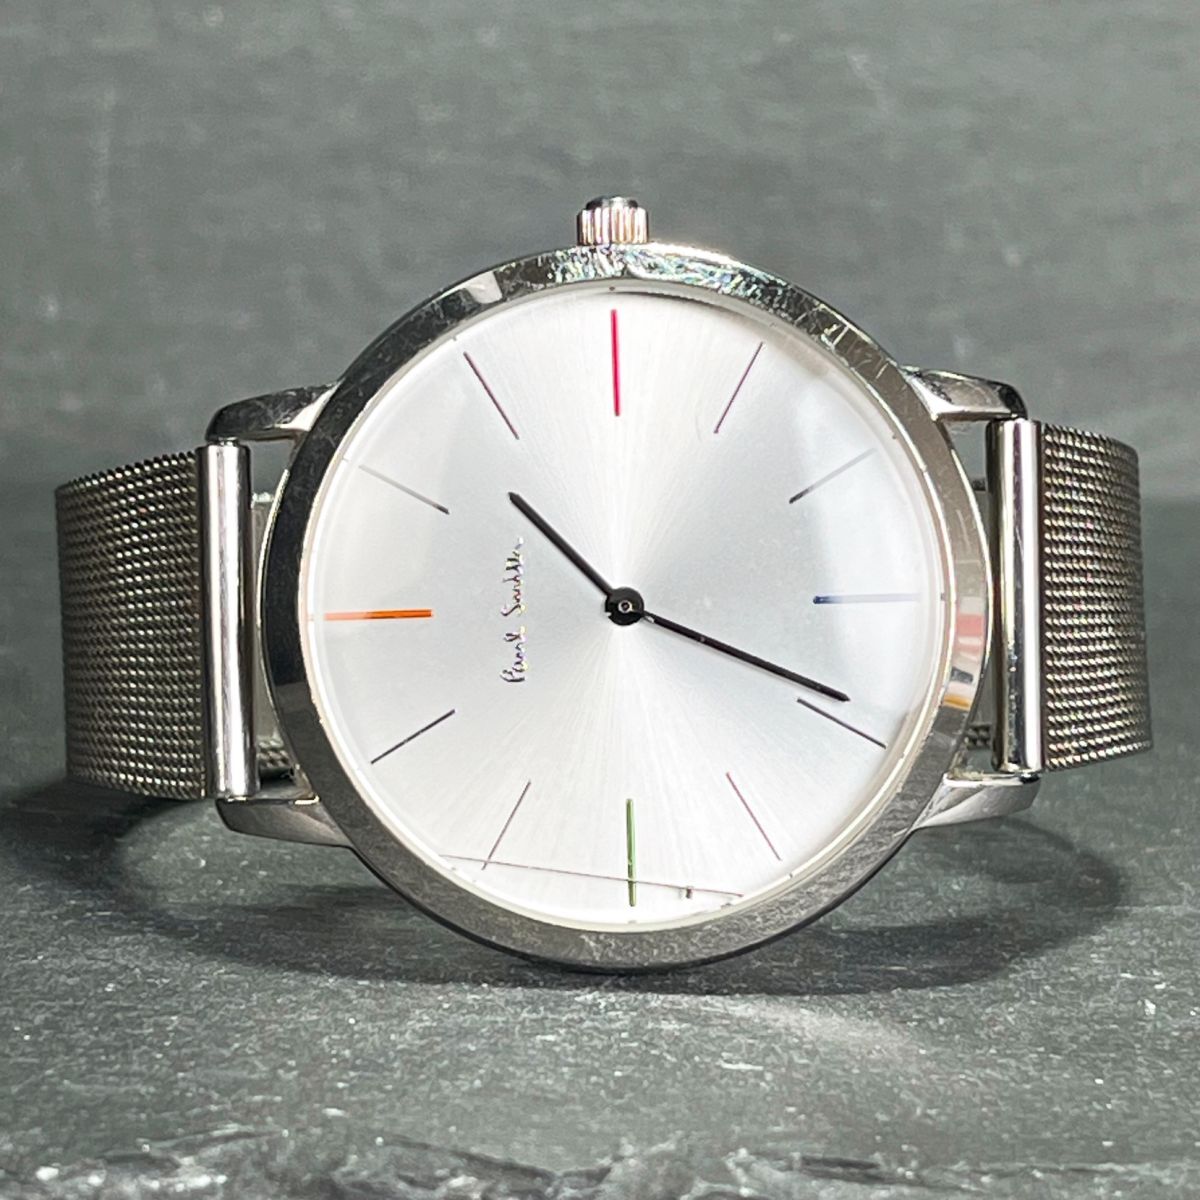 Paul Smith ポールスミス P10054 ユニセックス 腕時計 アナログ クオーツ シルバー文字盤 ステンレス メッシュベルト 新品電池交換済み_画像5